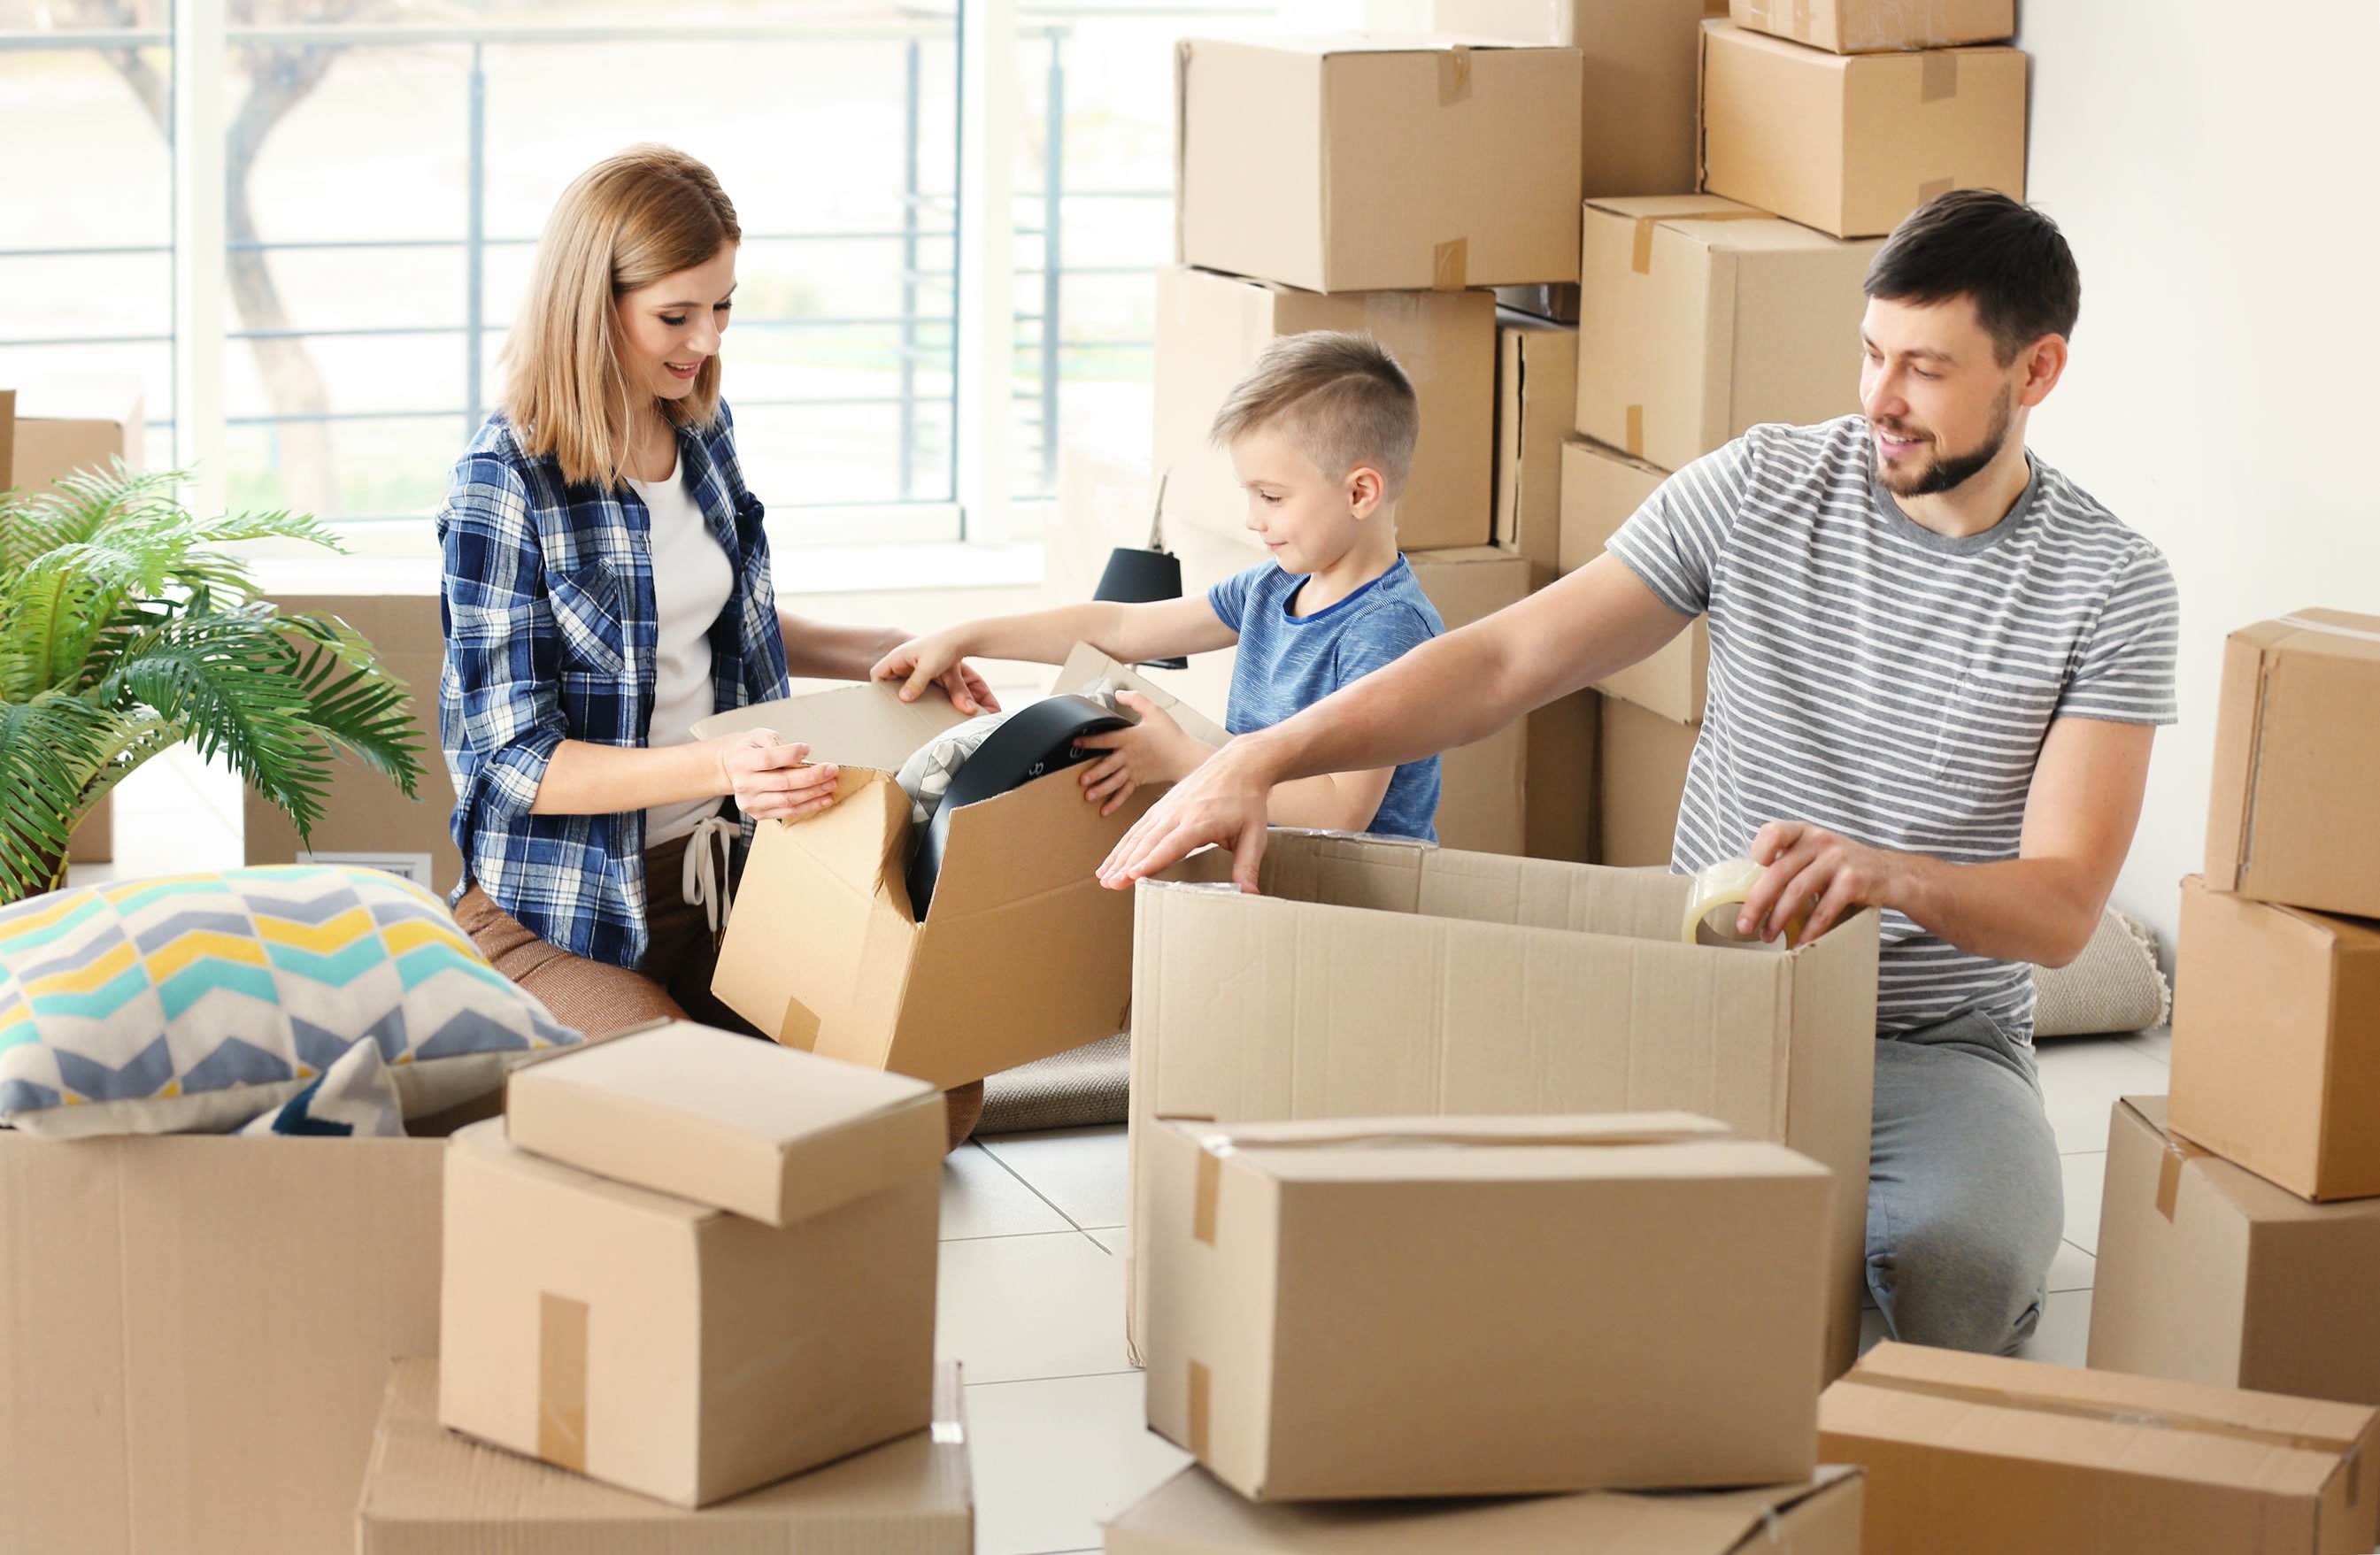 Способы переехать. Переезд. Семья в квартире с коробками. Переезжают в квартиру. Коробки с вещами.